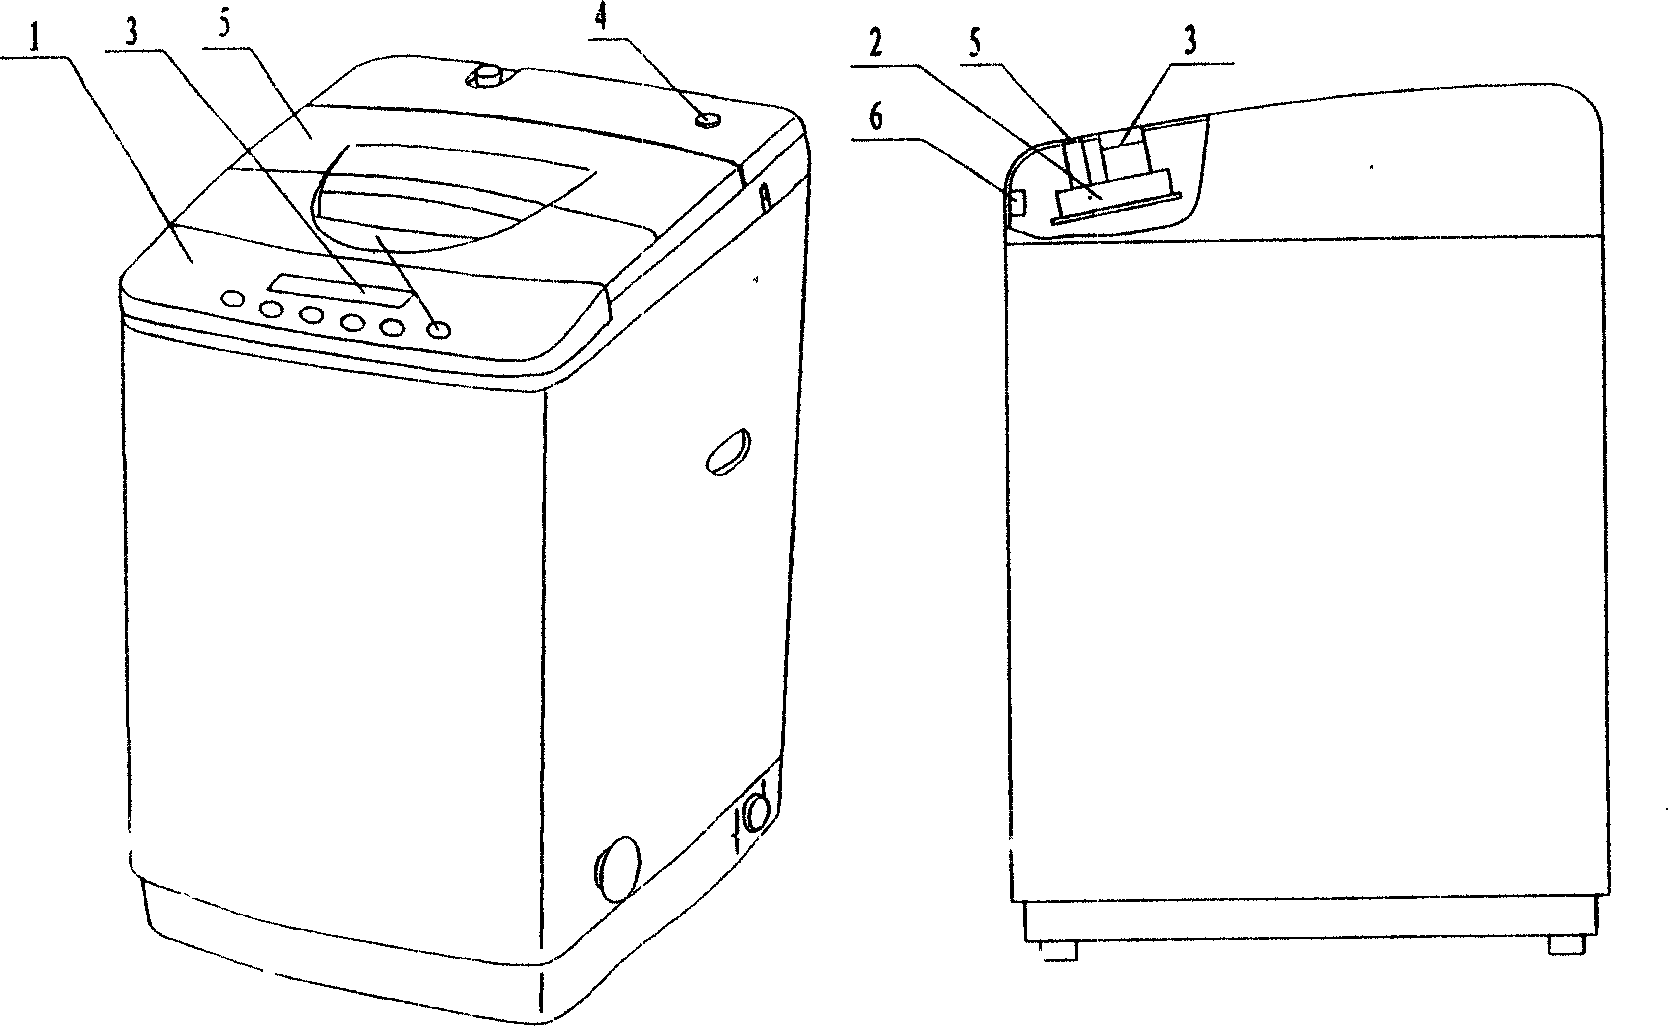 Washing machine using planar display